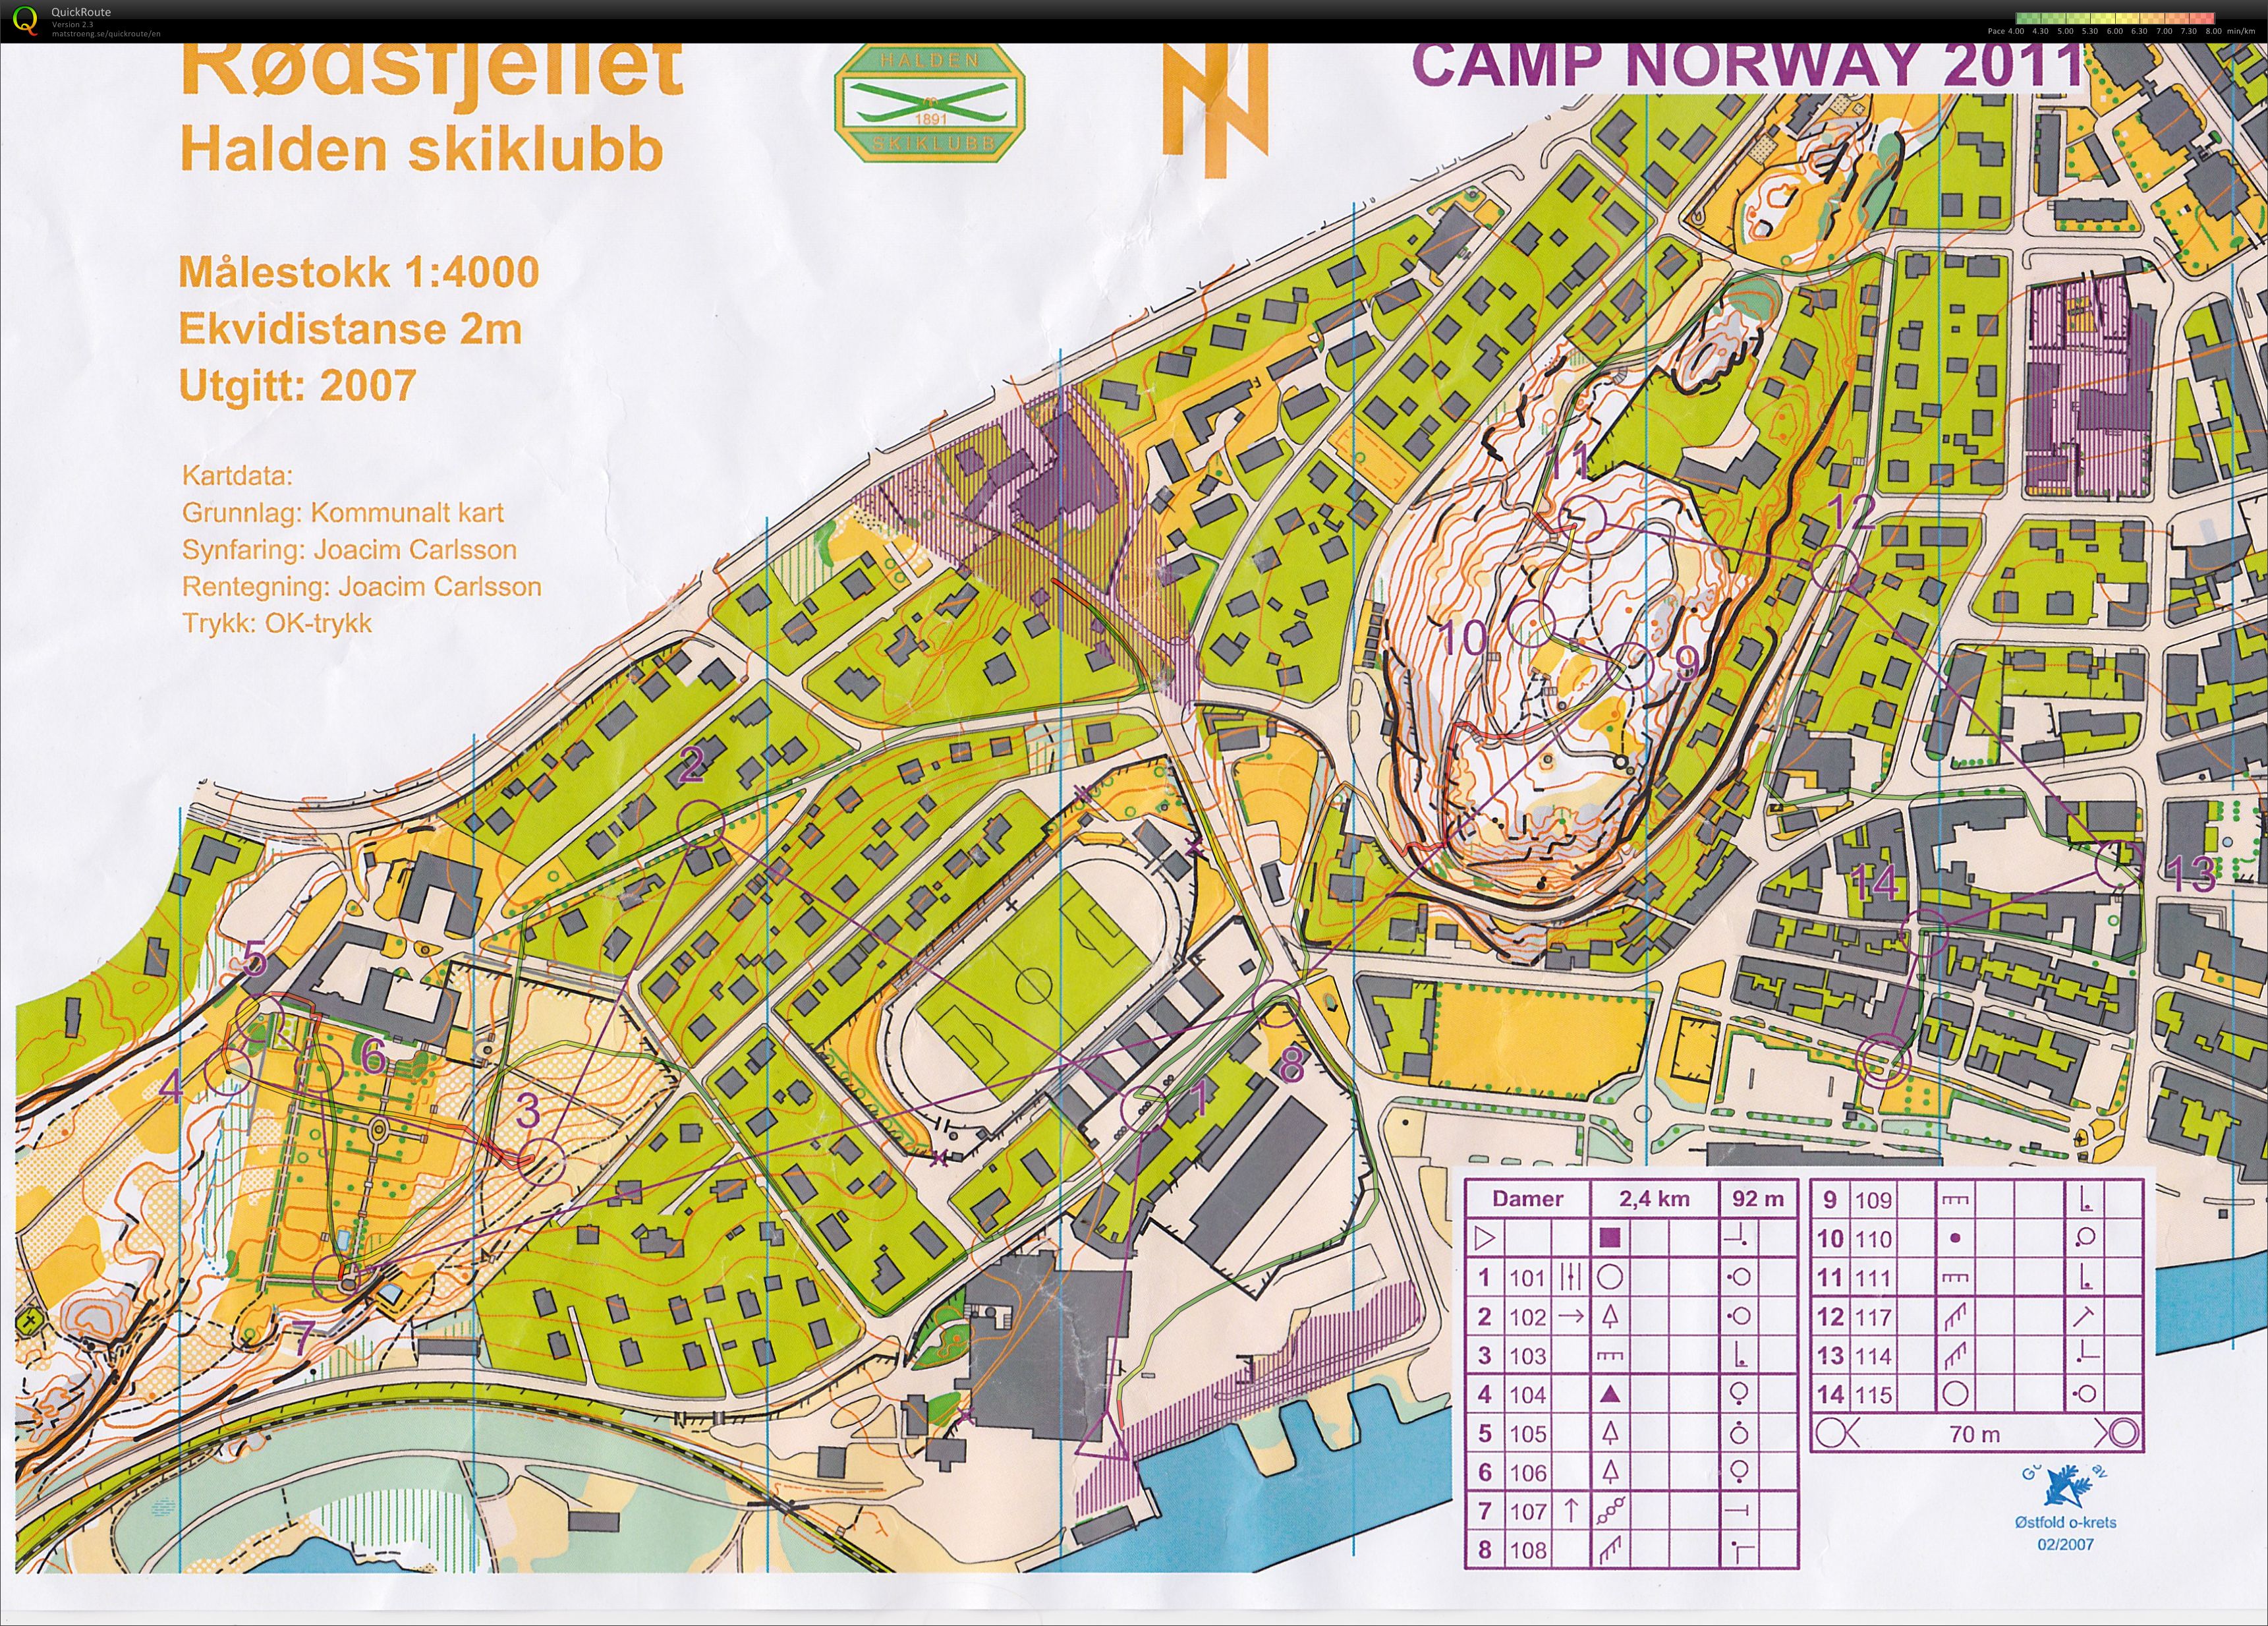 Camp Norway Halden økt 1, sprint (03.11.2011)